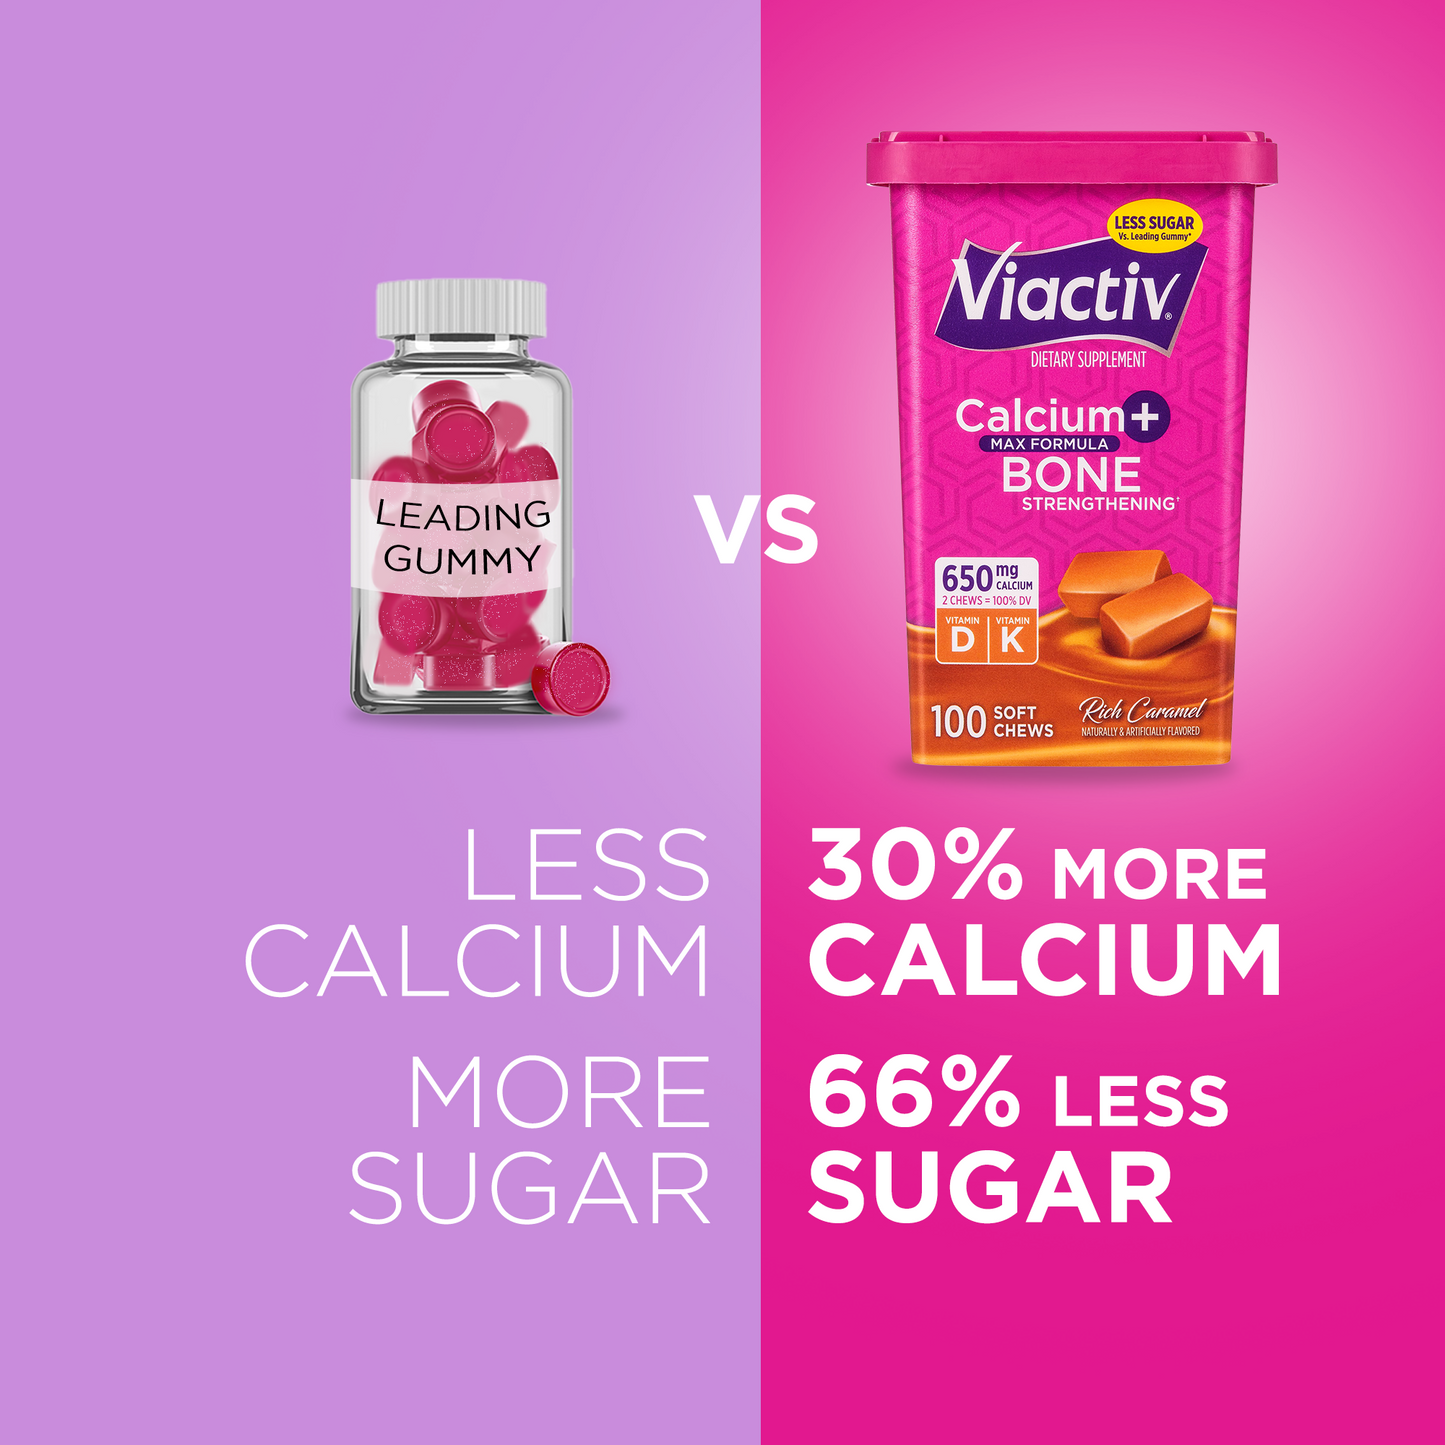 Viactiv caramel calcium chews have 30% more calcium and 66% less sugar than gummies